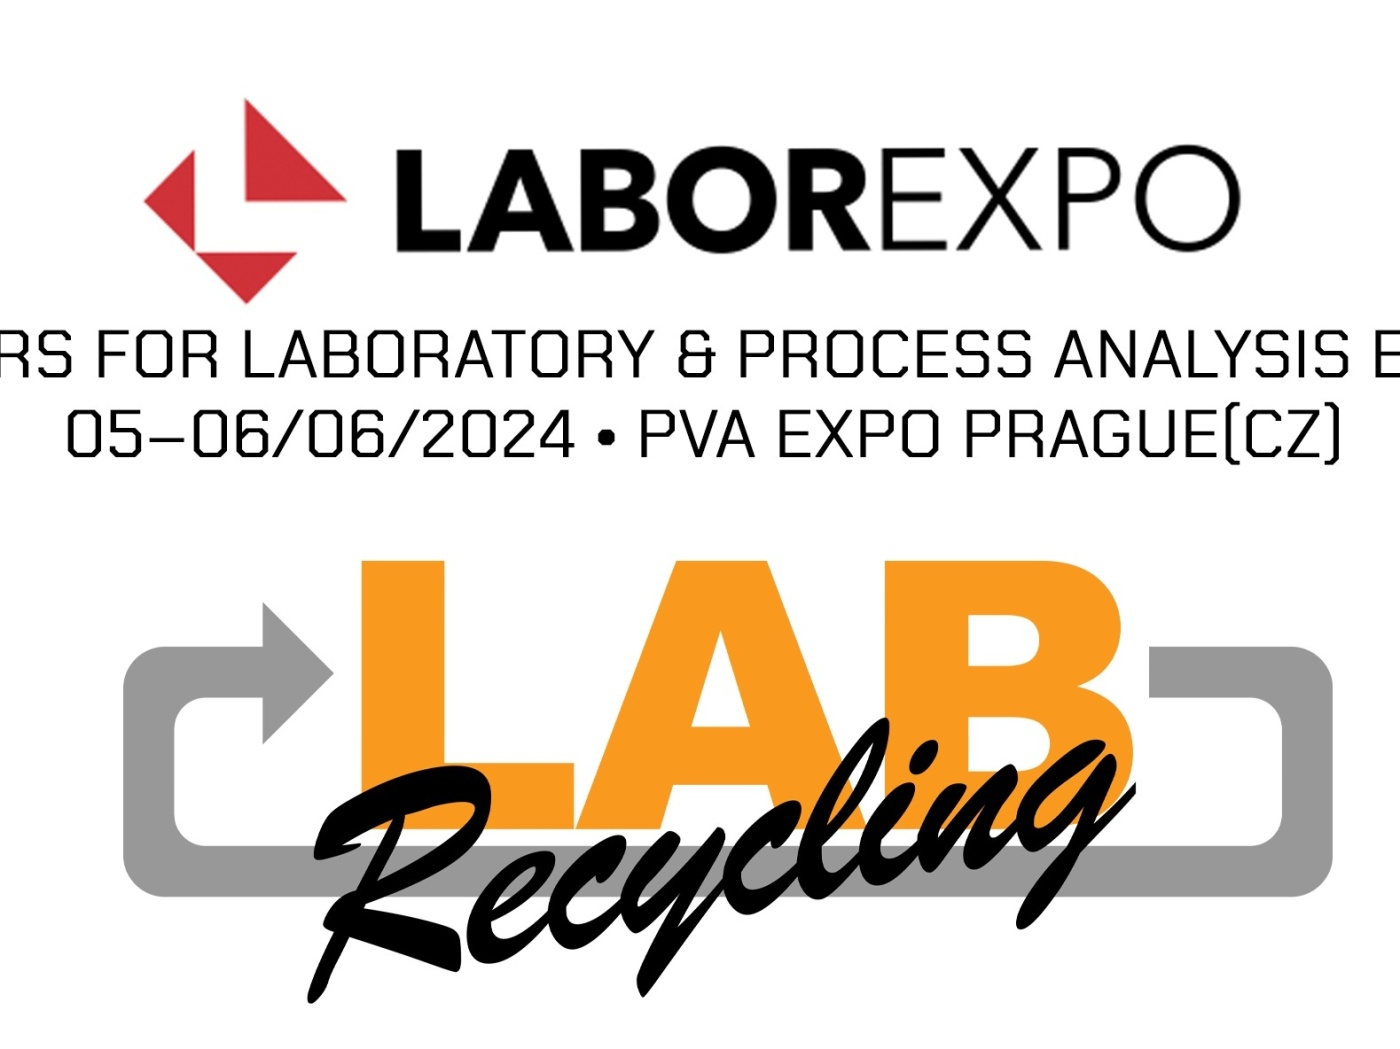 Labrecycling stellt auf der LABOREXPO 2022 aus